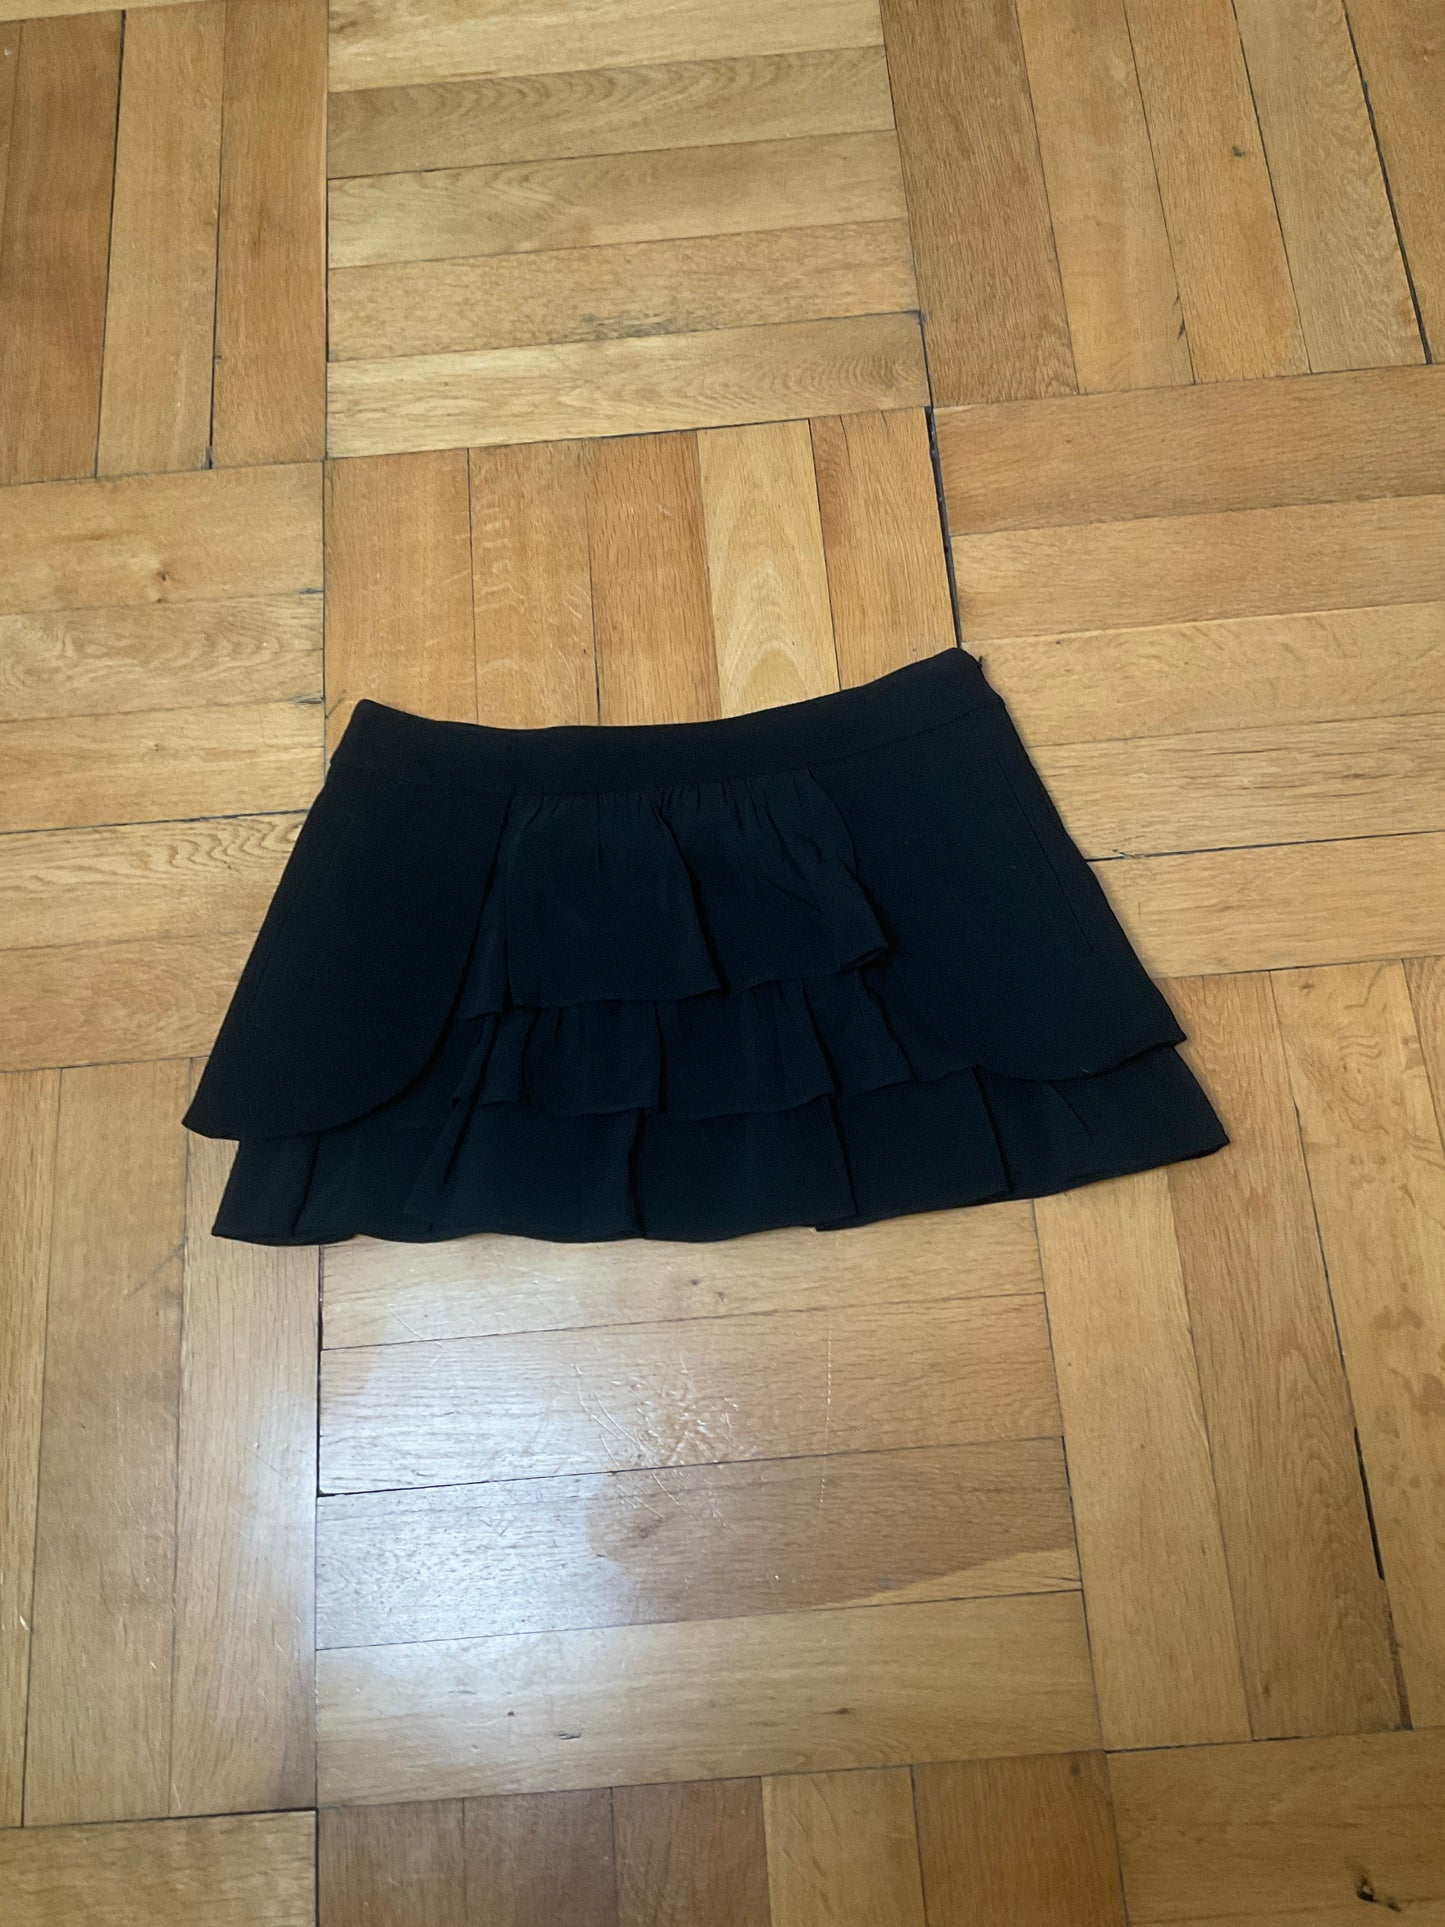 Festive skirt